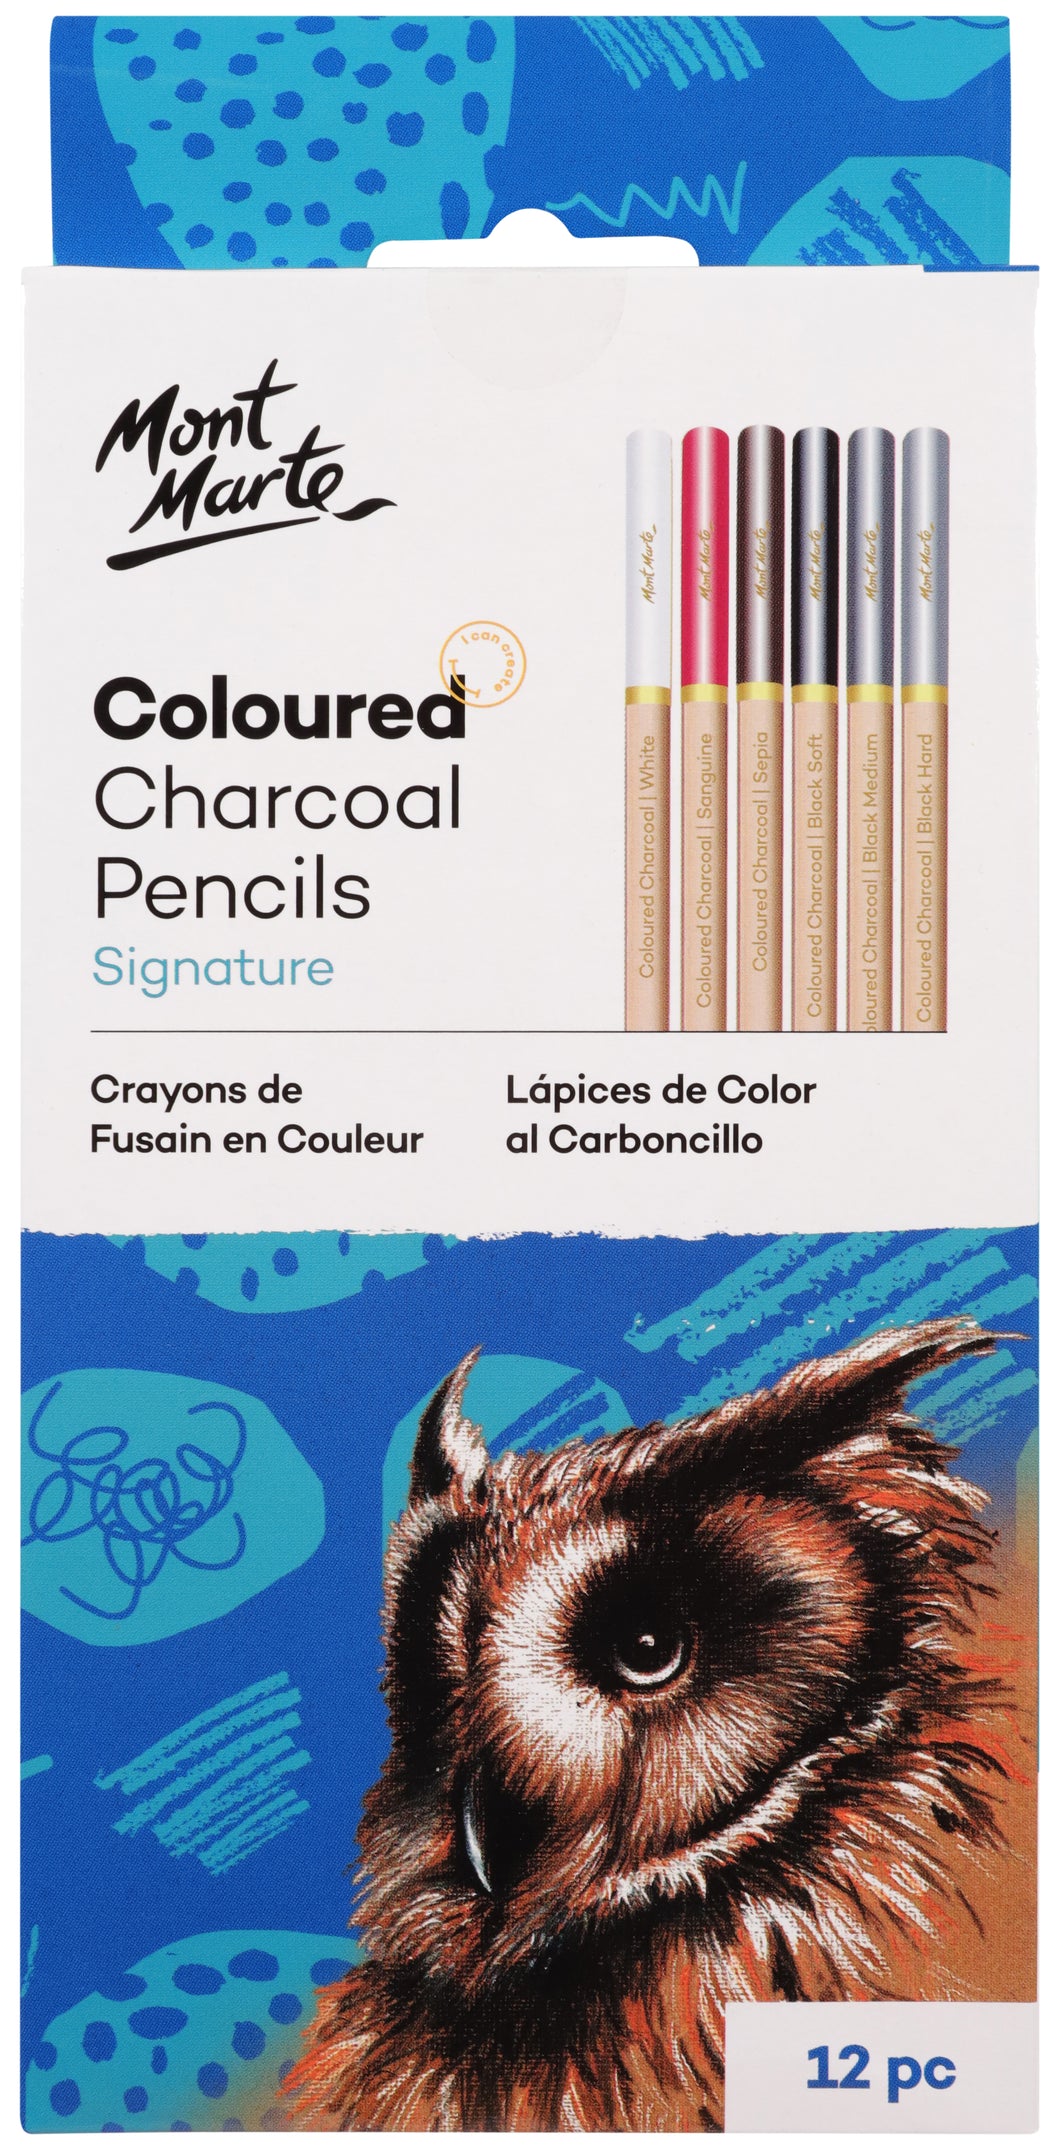 Monte Marte Coloured Charcoal Pencils 12pc